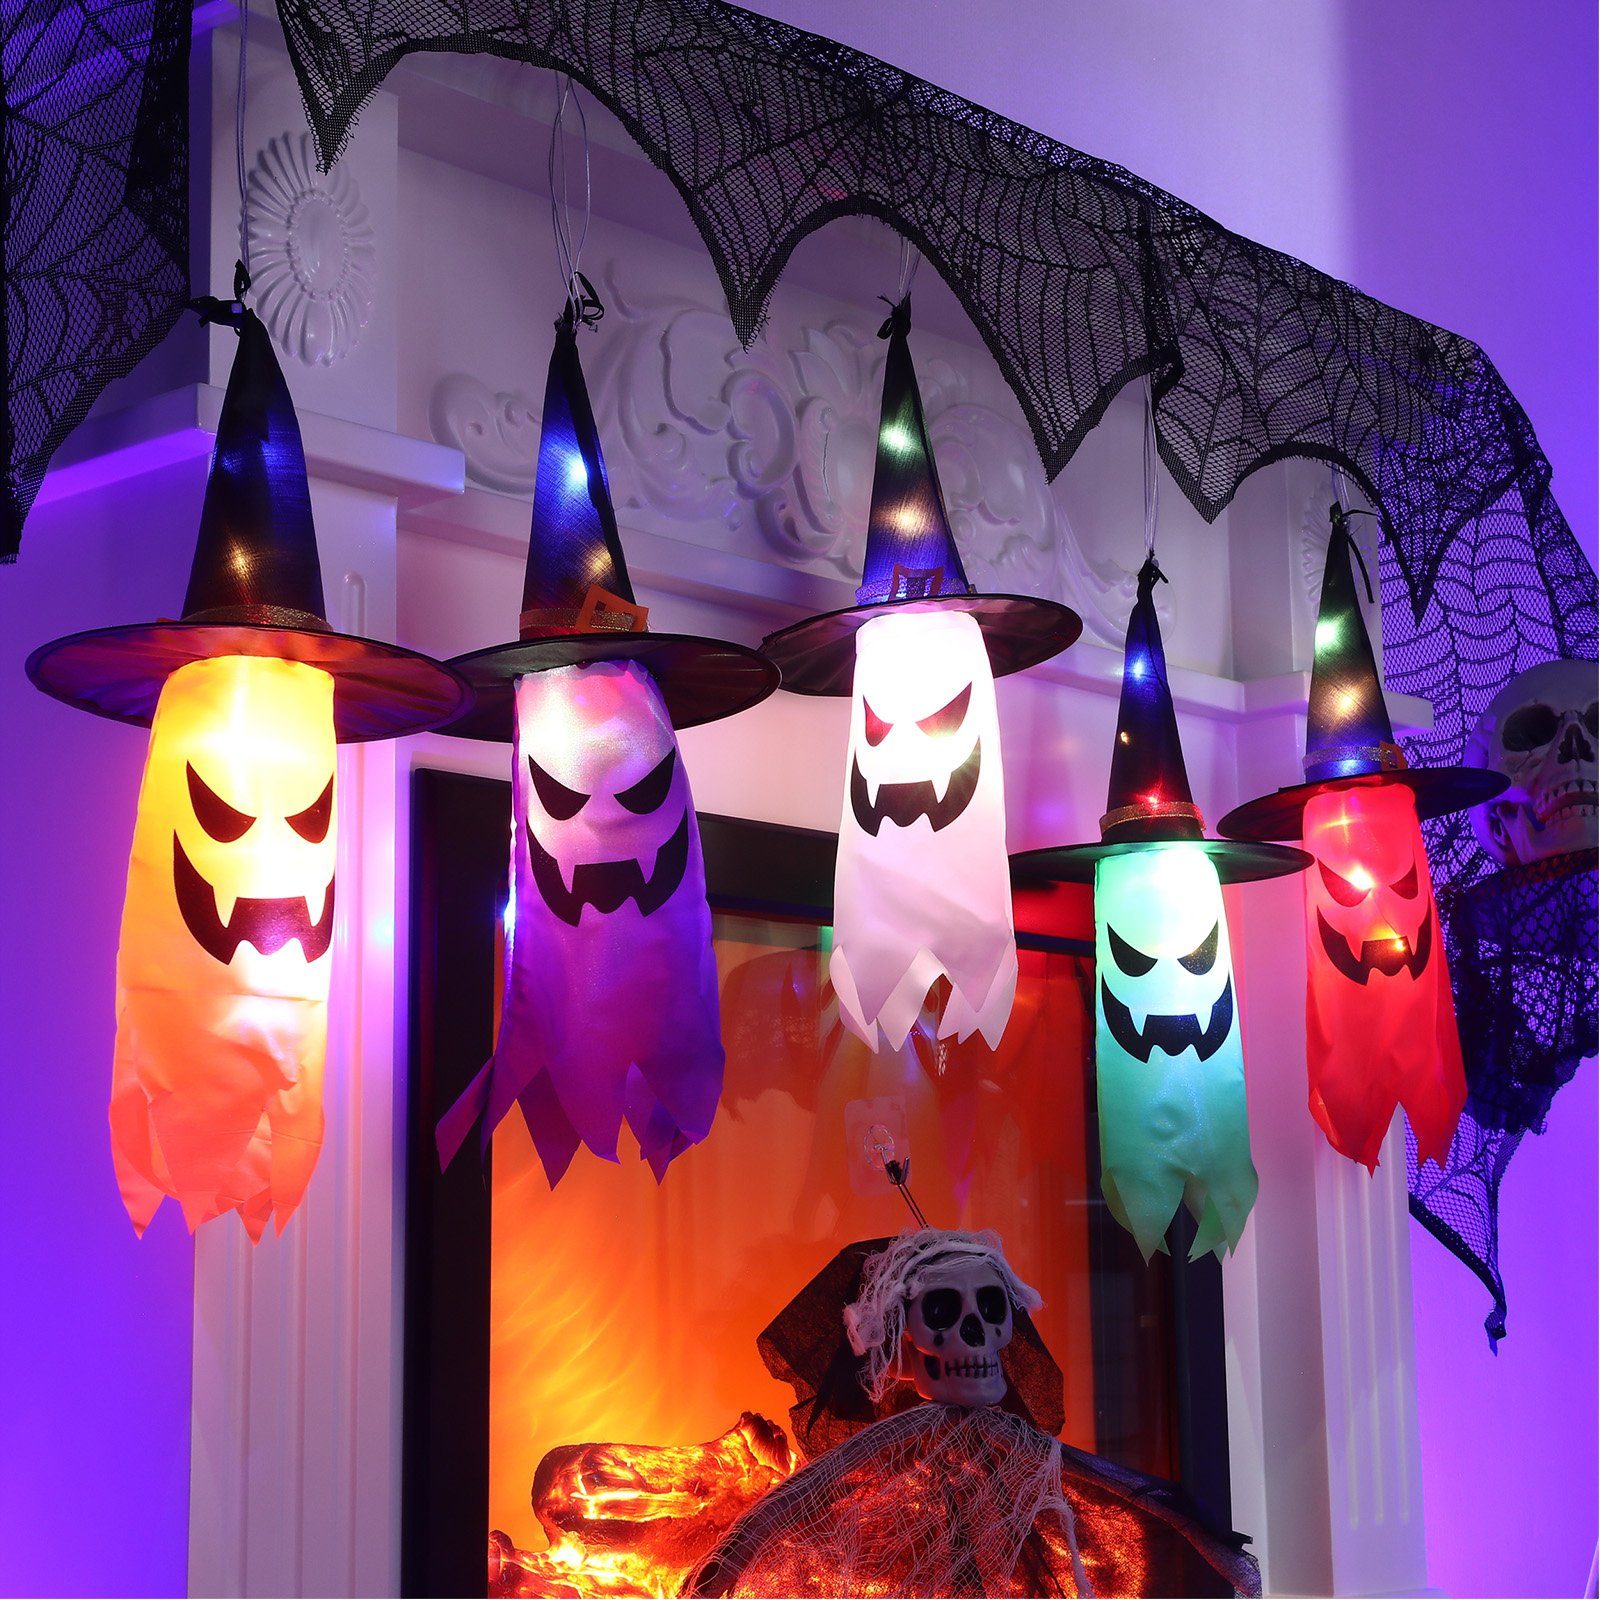 NEU Halloween-Licht-Projektor Diskokugel mit Grusel-Motiven, 12x12x14cm -  Halloween Party-Dekoration Halloween Produkte 